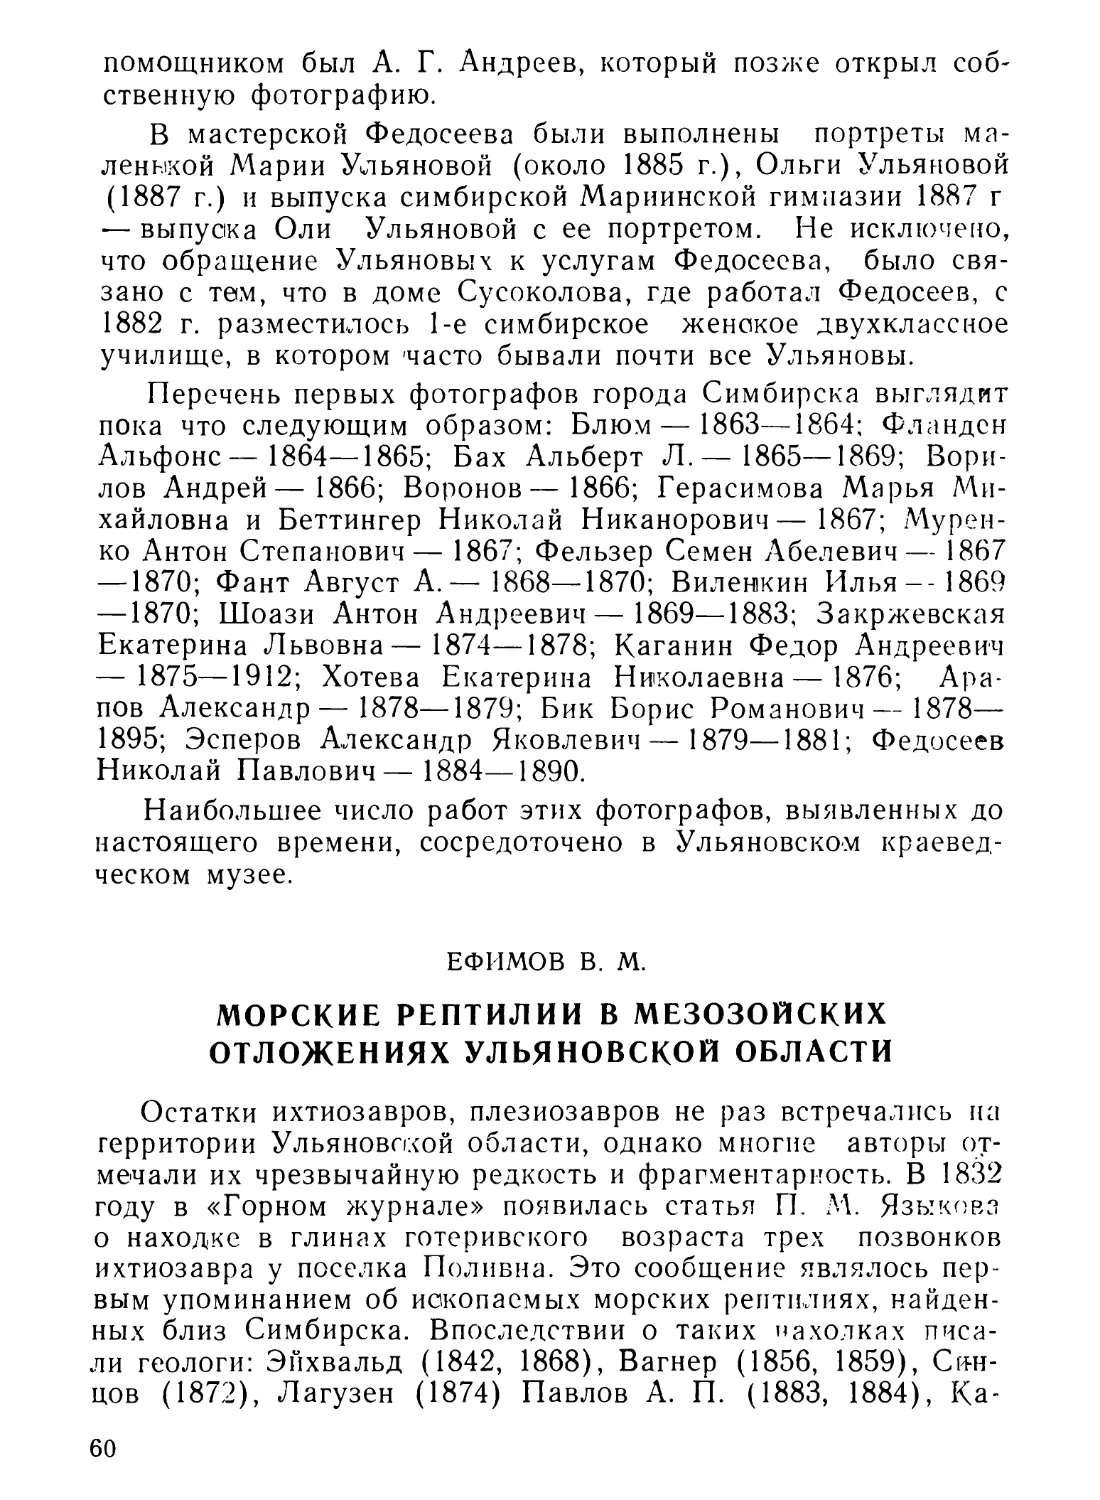 Ефимов В. М. Морские рептилии в мезозойских отложениях Ульяновской области